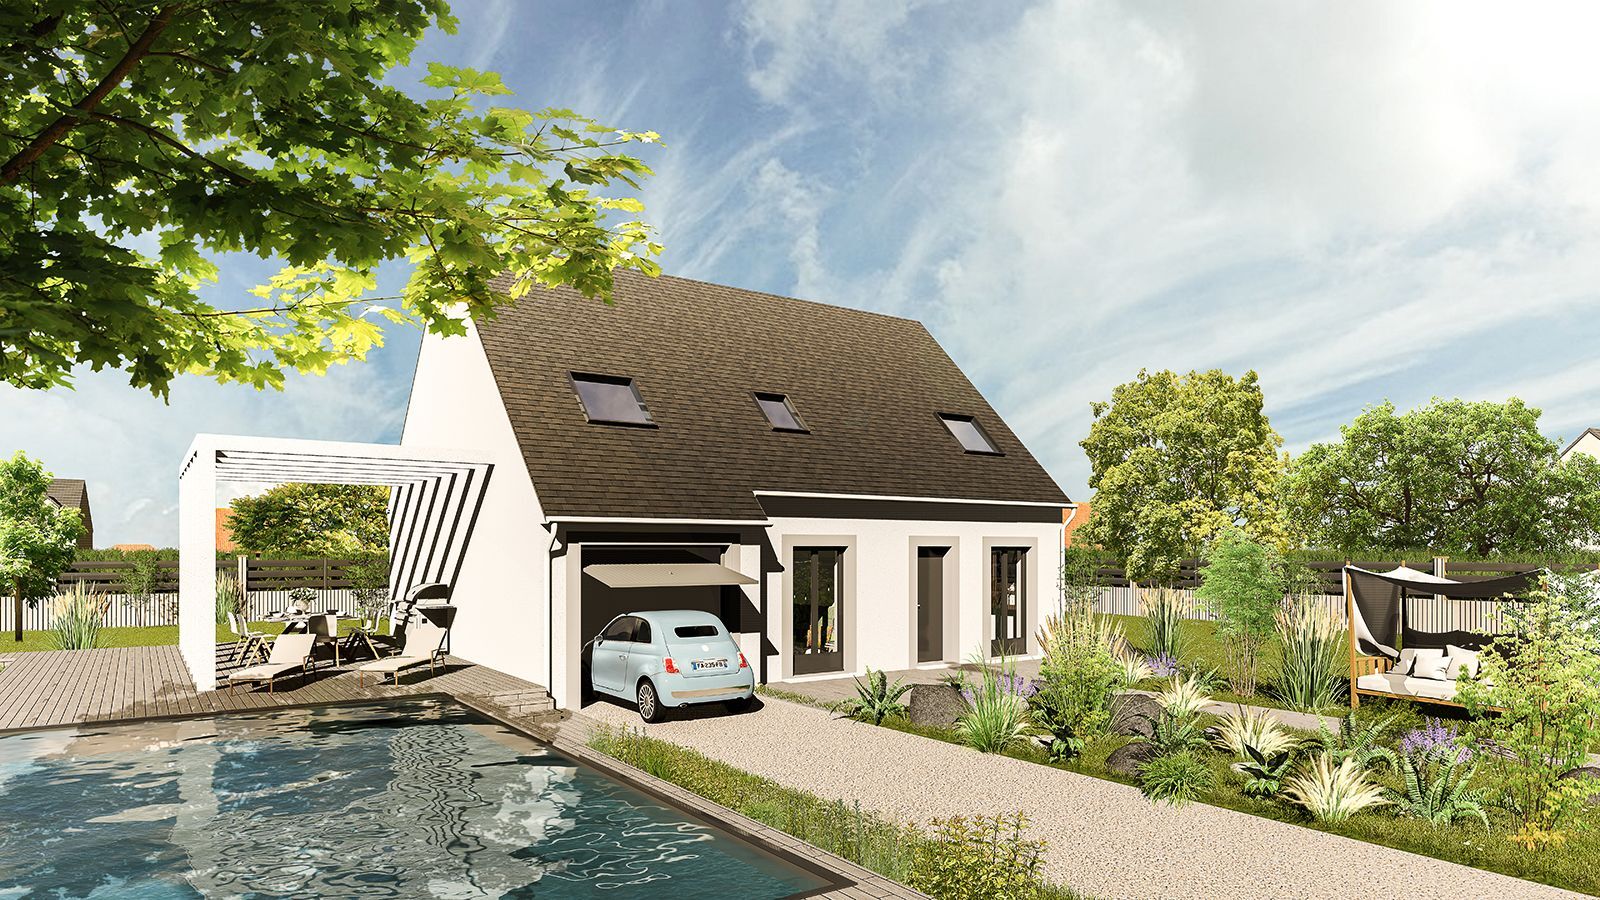 Vente Maison neuve 112 m² à Vernouillet 254 039 €